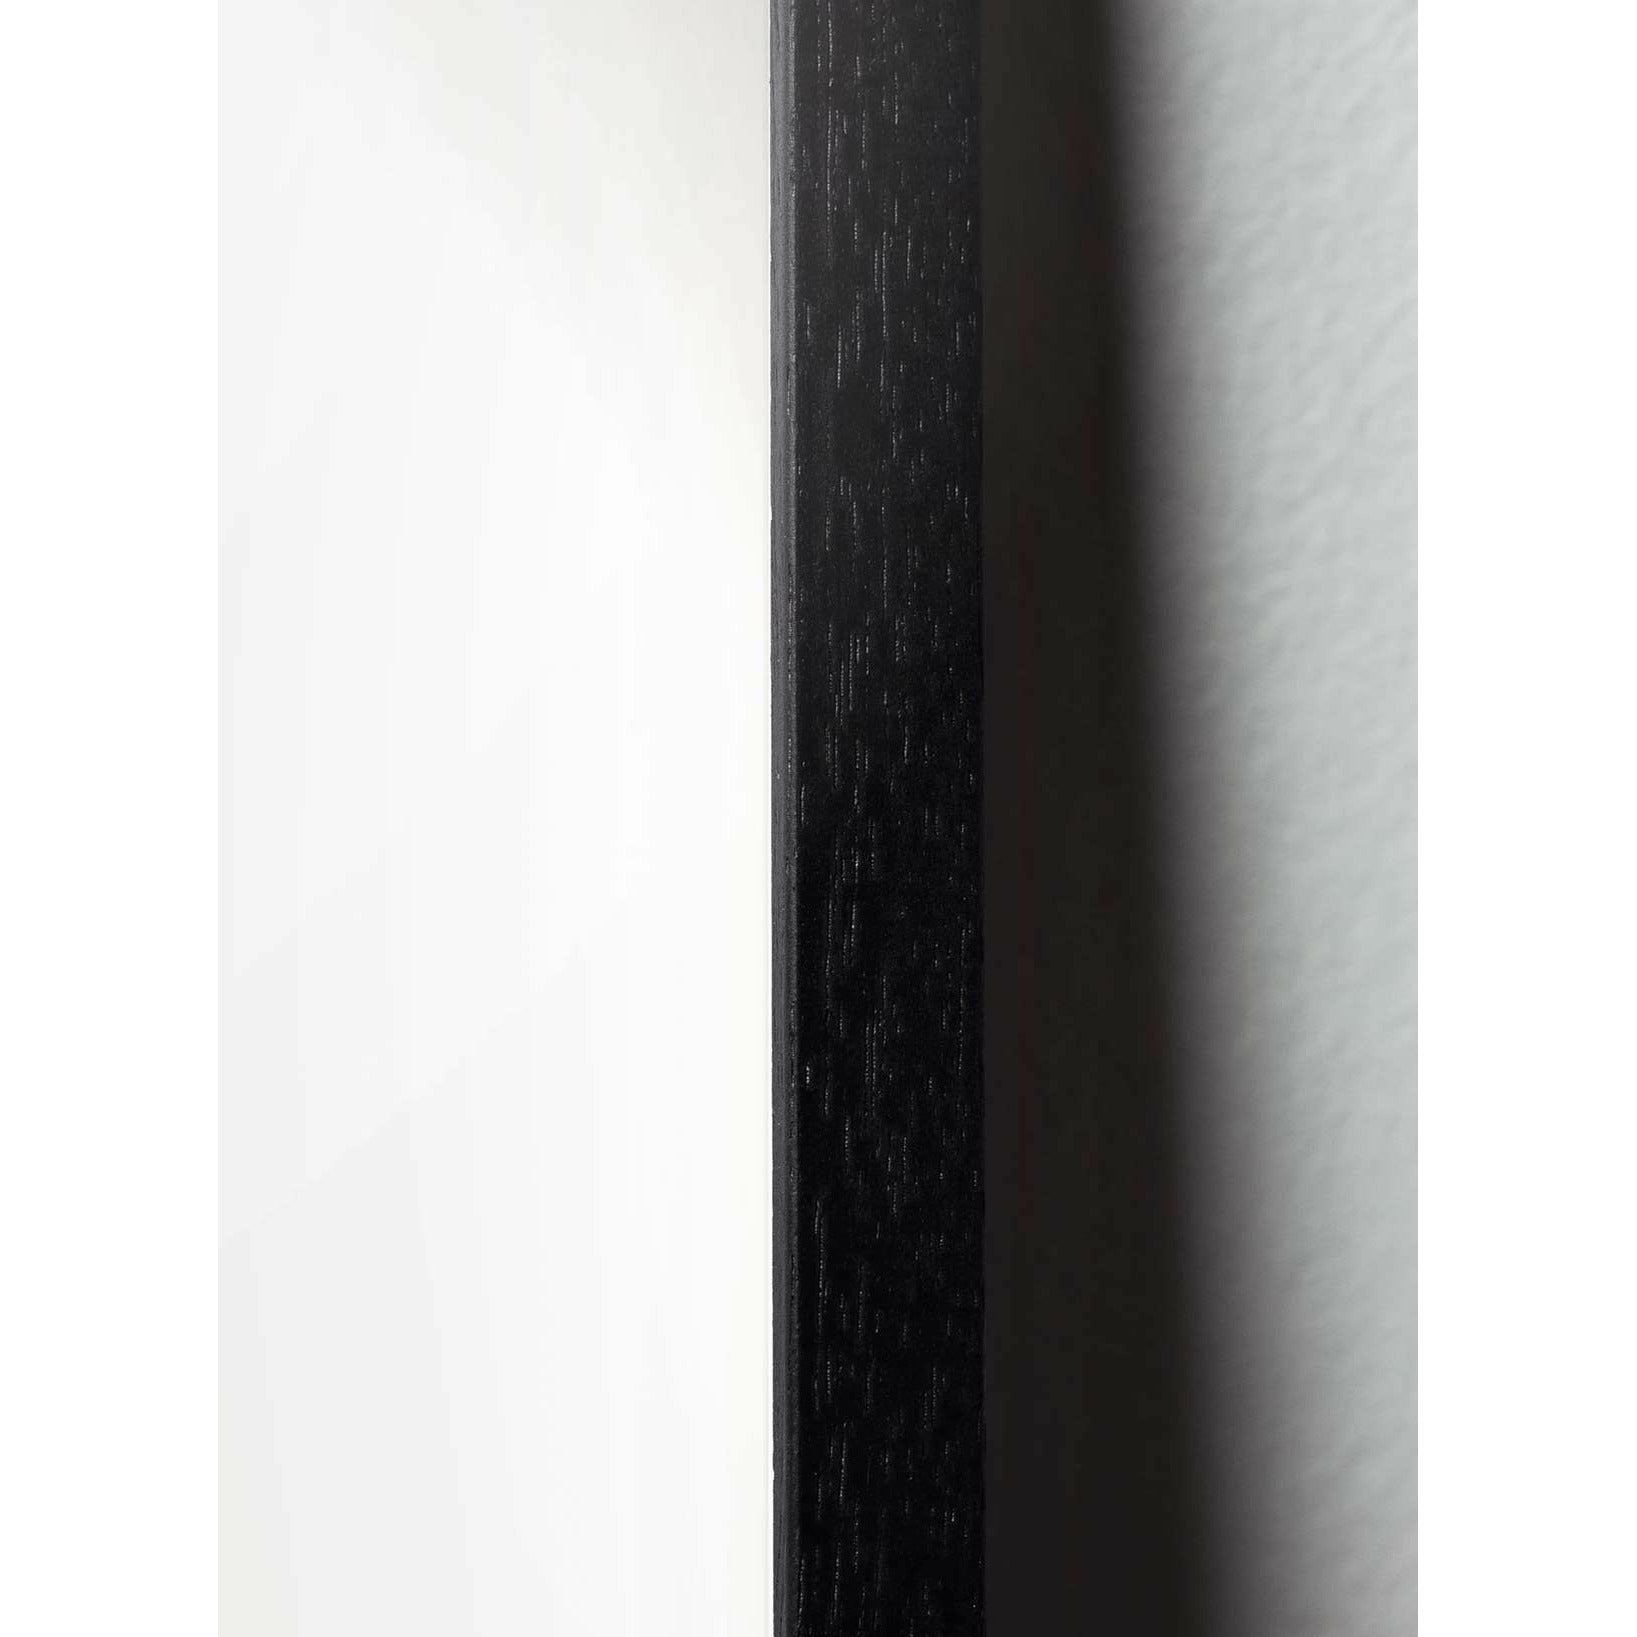 Brainchild Affiche de la ligne d'ours en peluche, cadre en bois laqué noir 30x40 cm, fond bleu